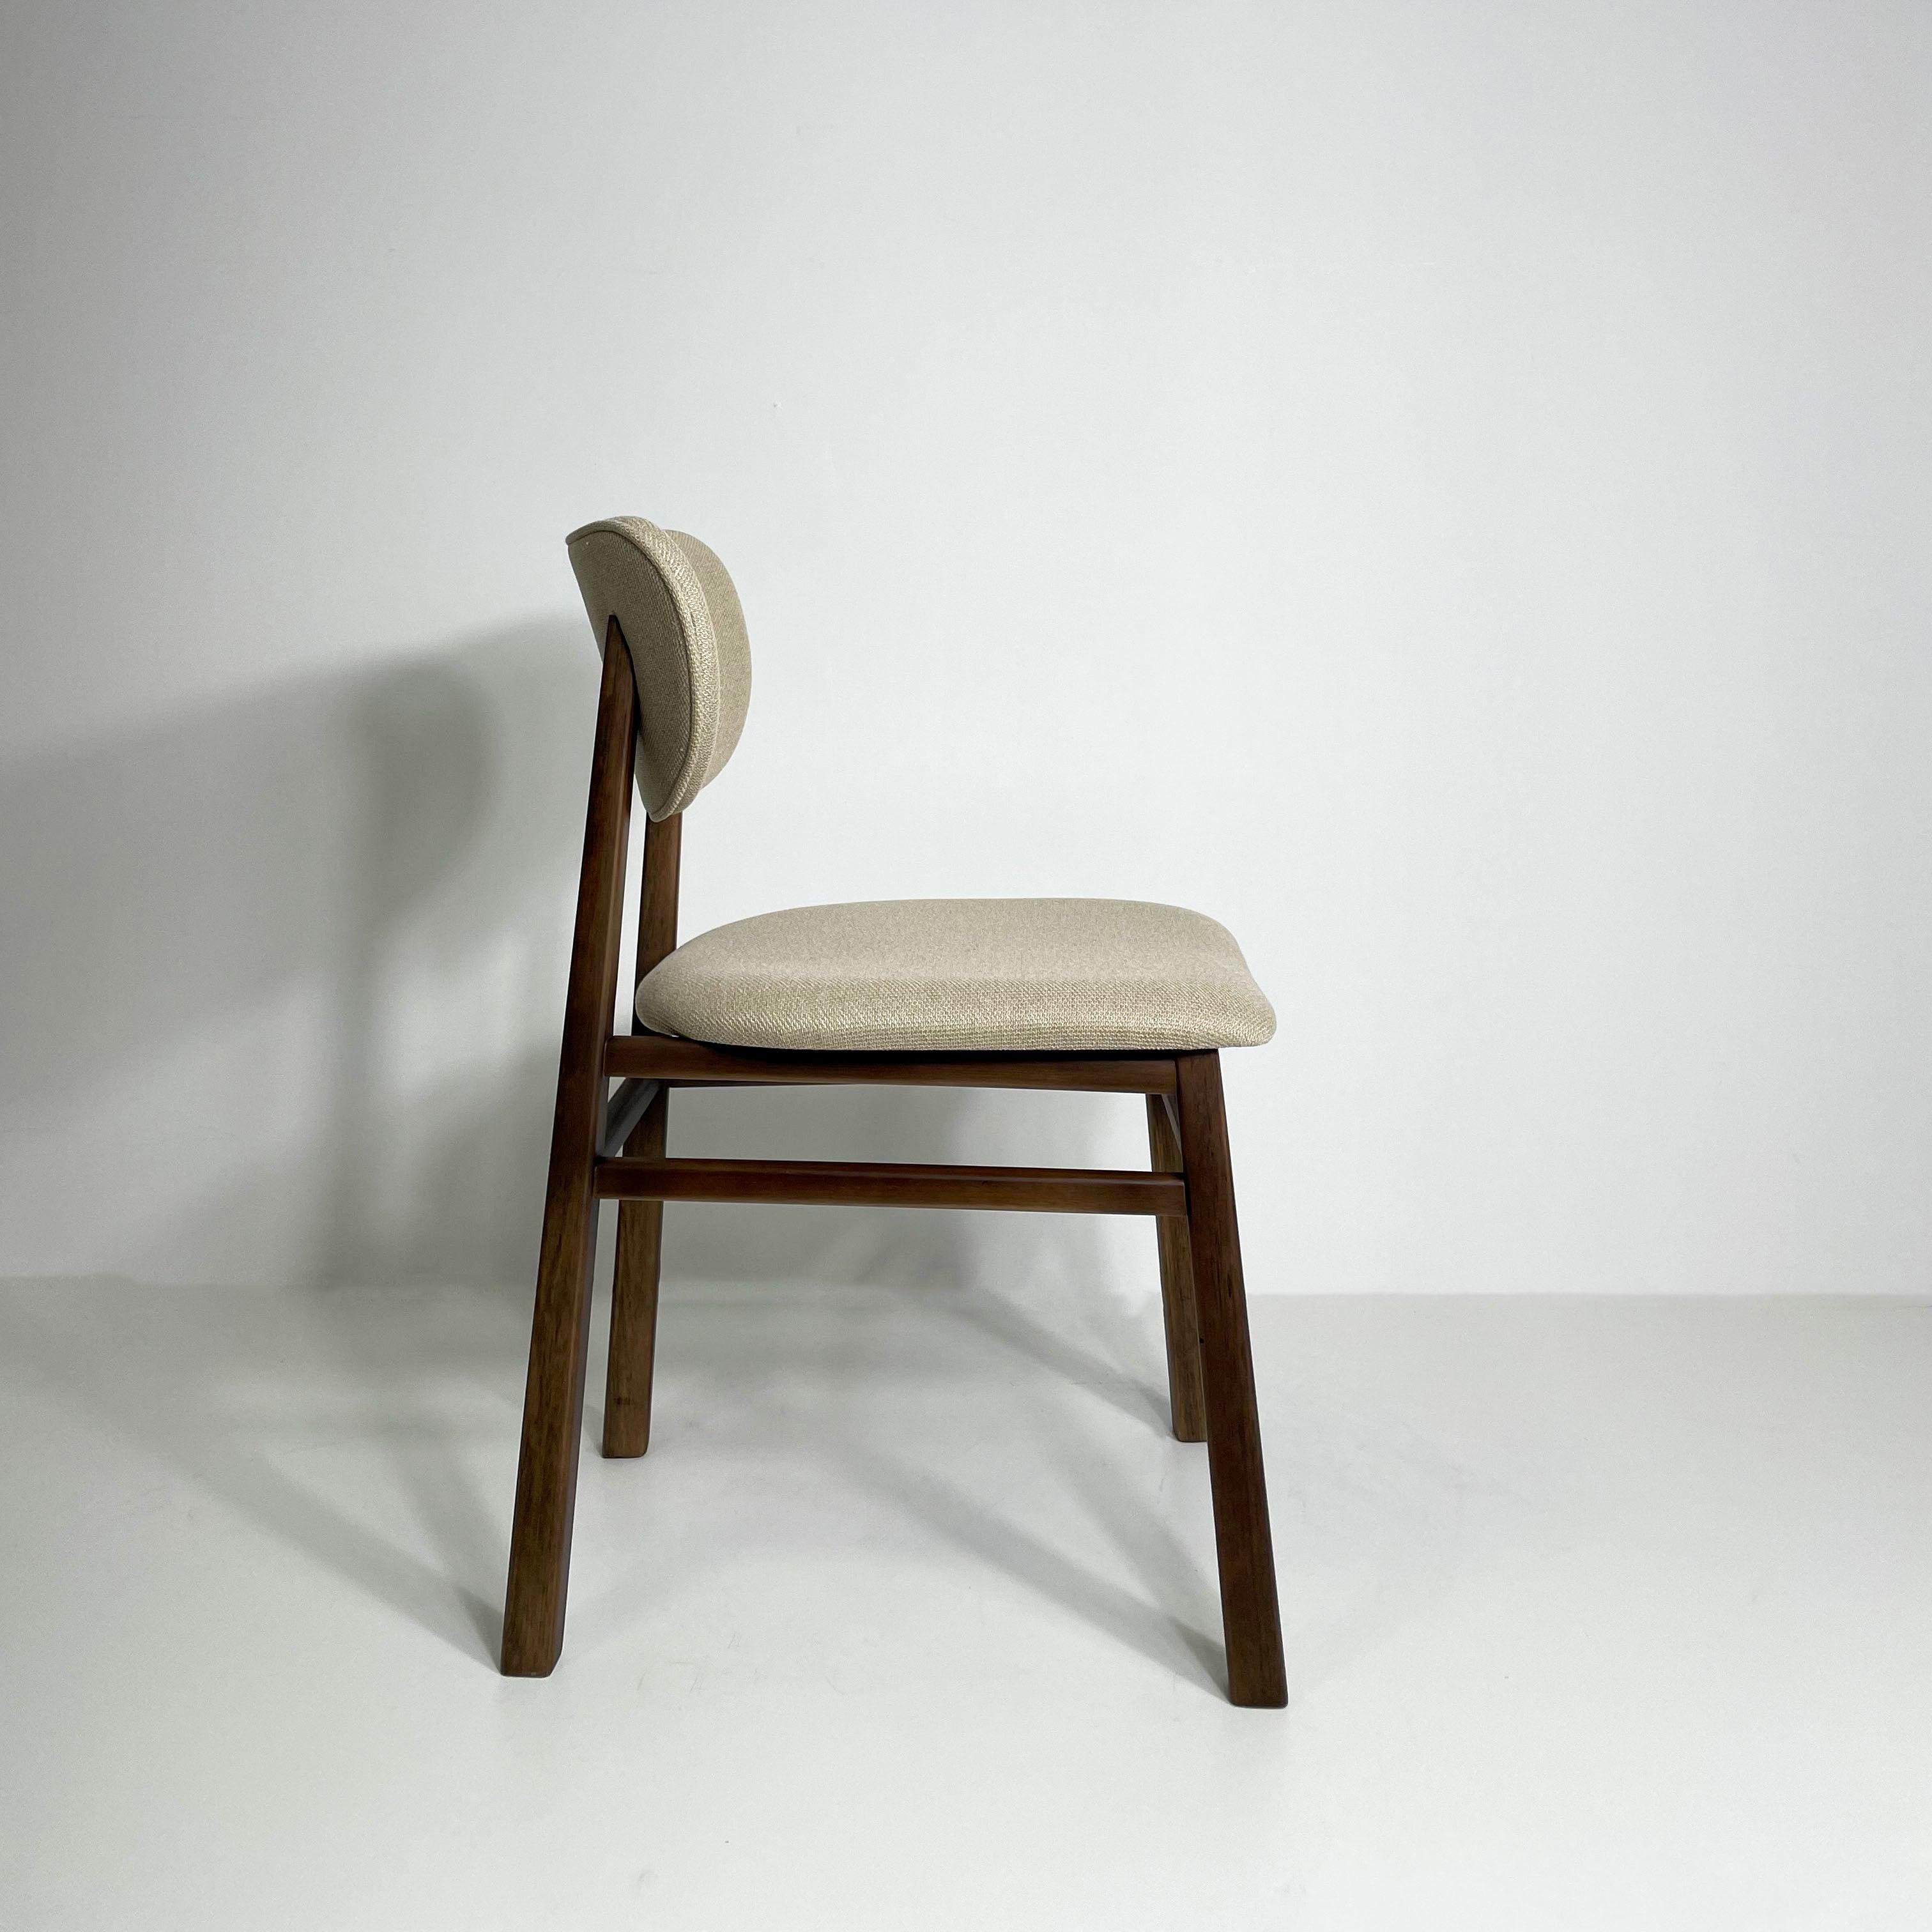 Cadeira sinuosa nogueira - estofado linho areia - Veromobili | Móveis e Decoração